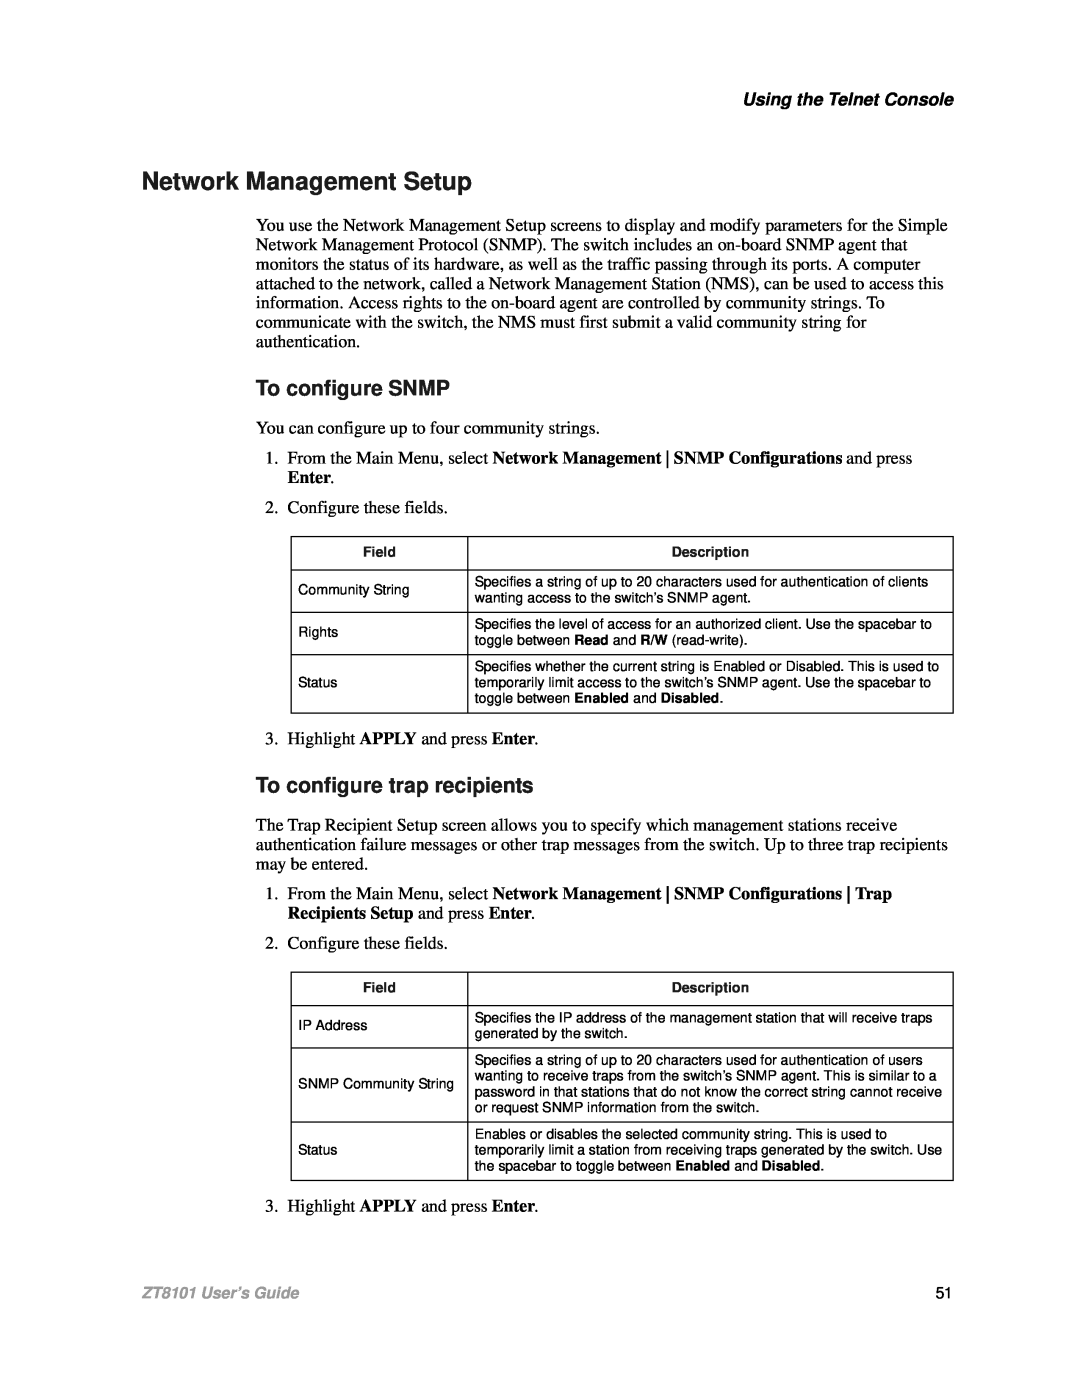 Intel ZT8101 Network Management Setup, To configure SNMP, To configure trap recipients, Using the Telnet Console 